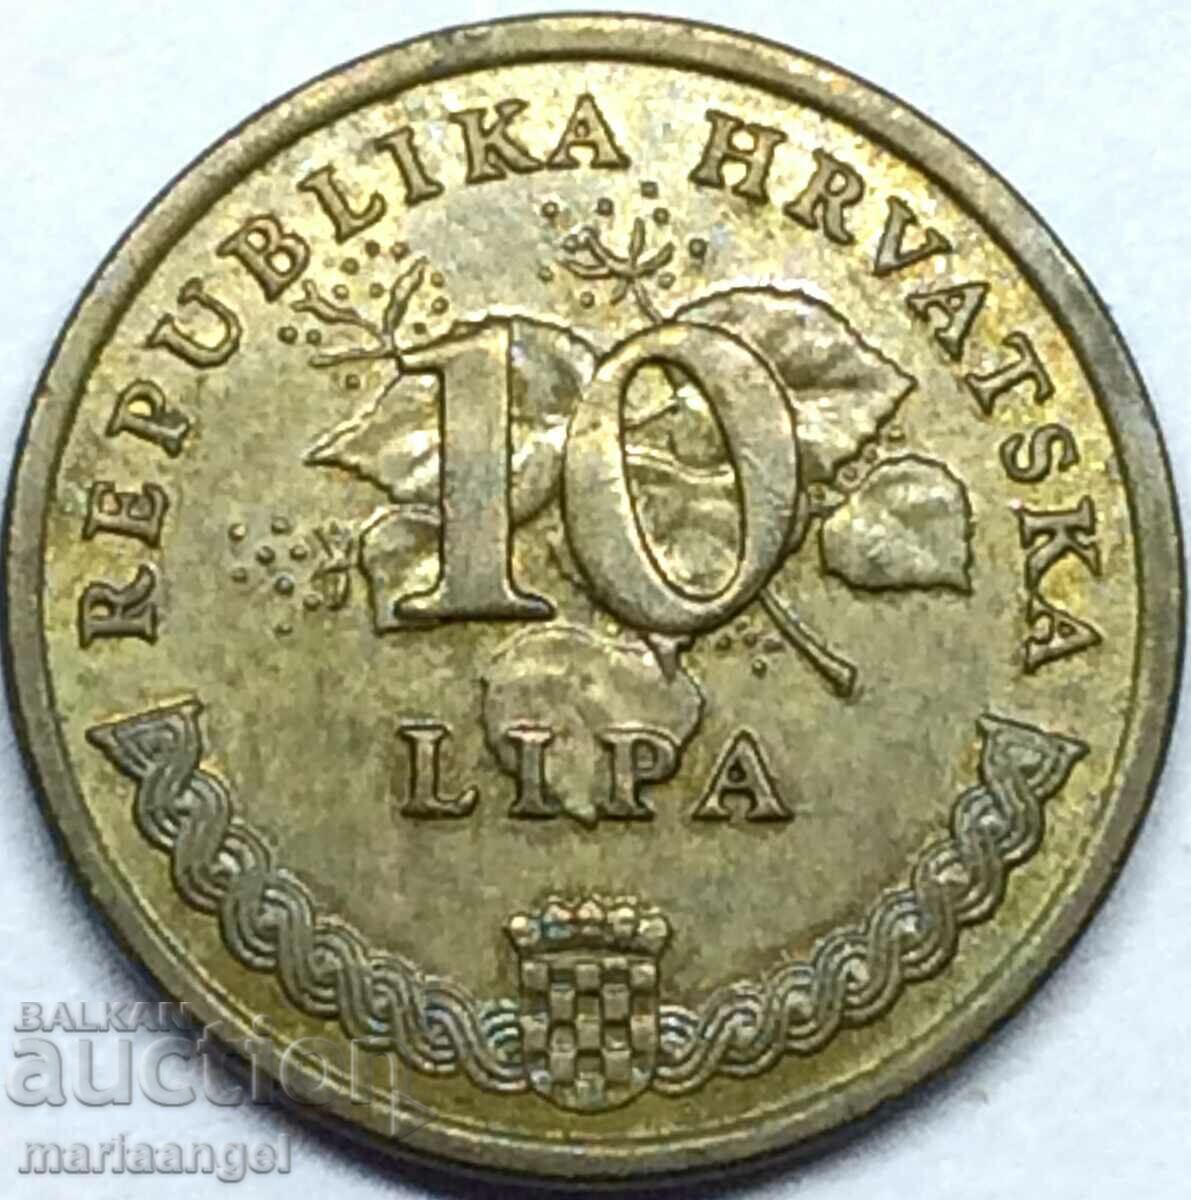 10 Lipa Croatia 2005